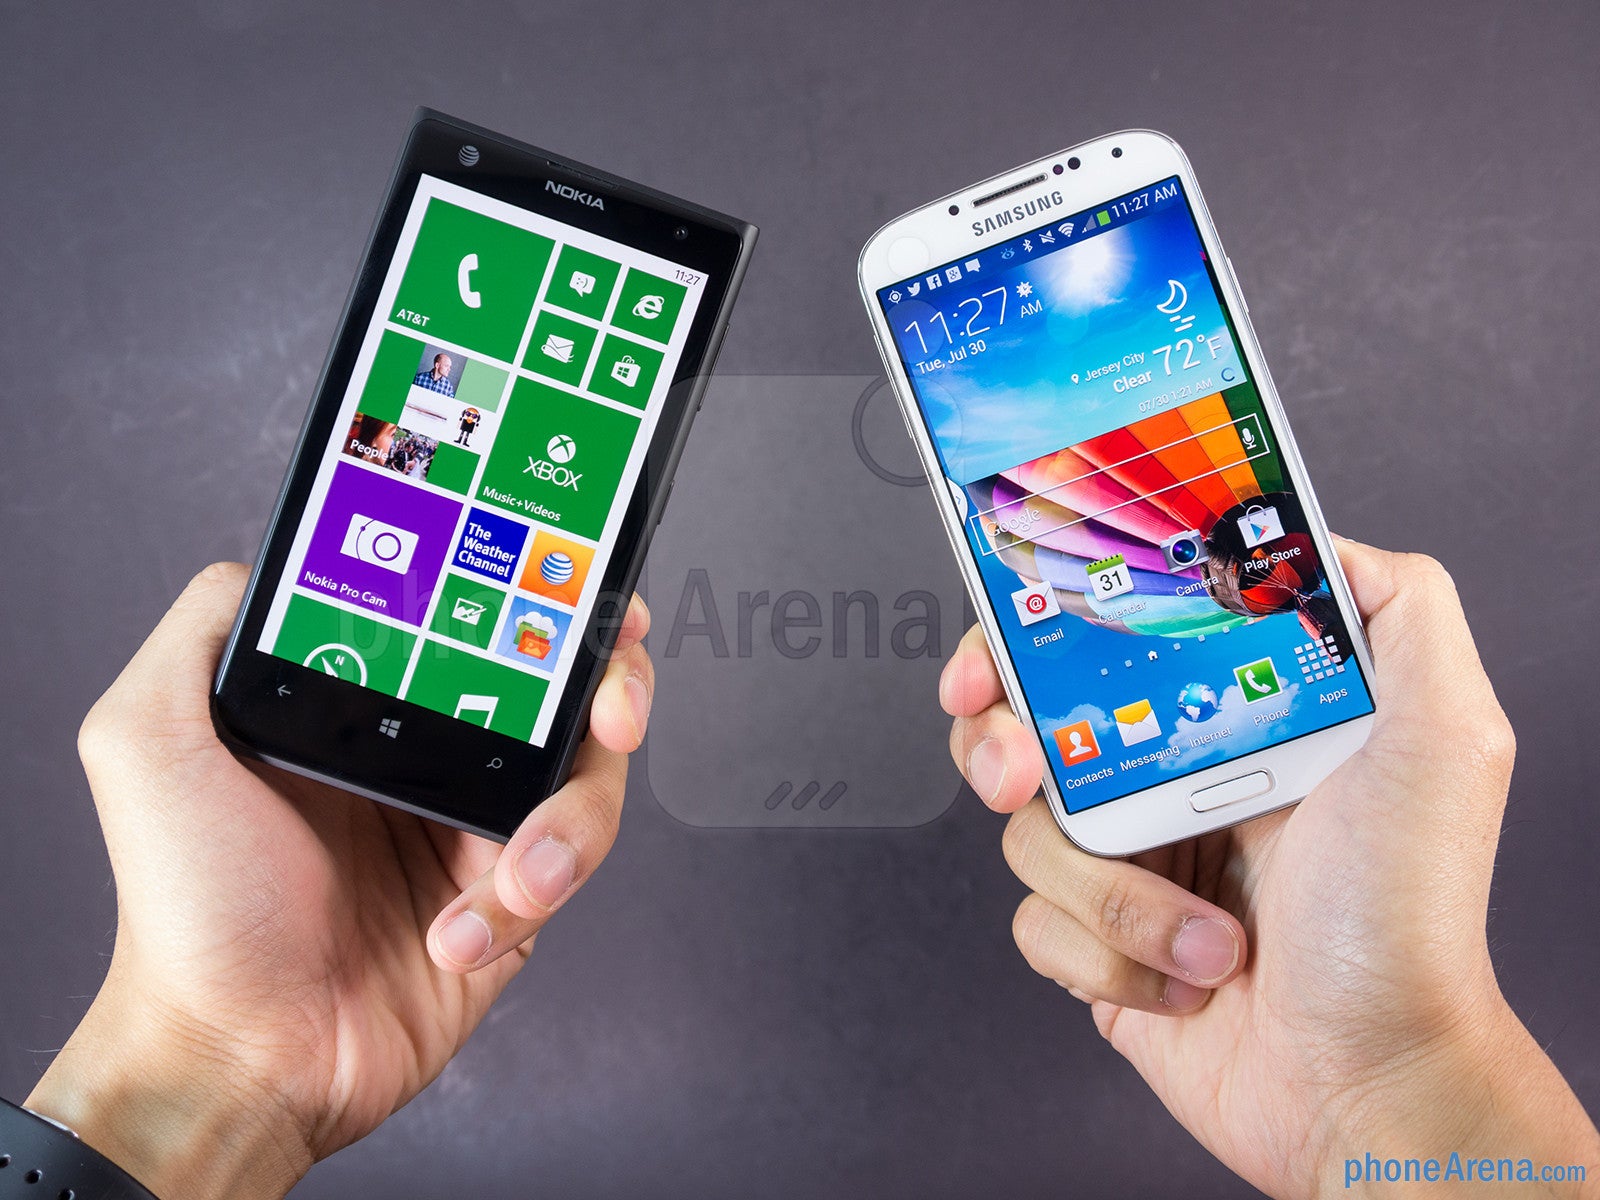 Nokia Lumia 1020 vs Samsung Galaxy S4